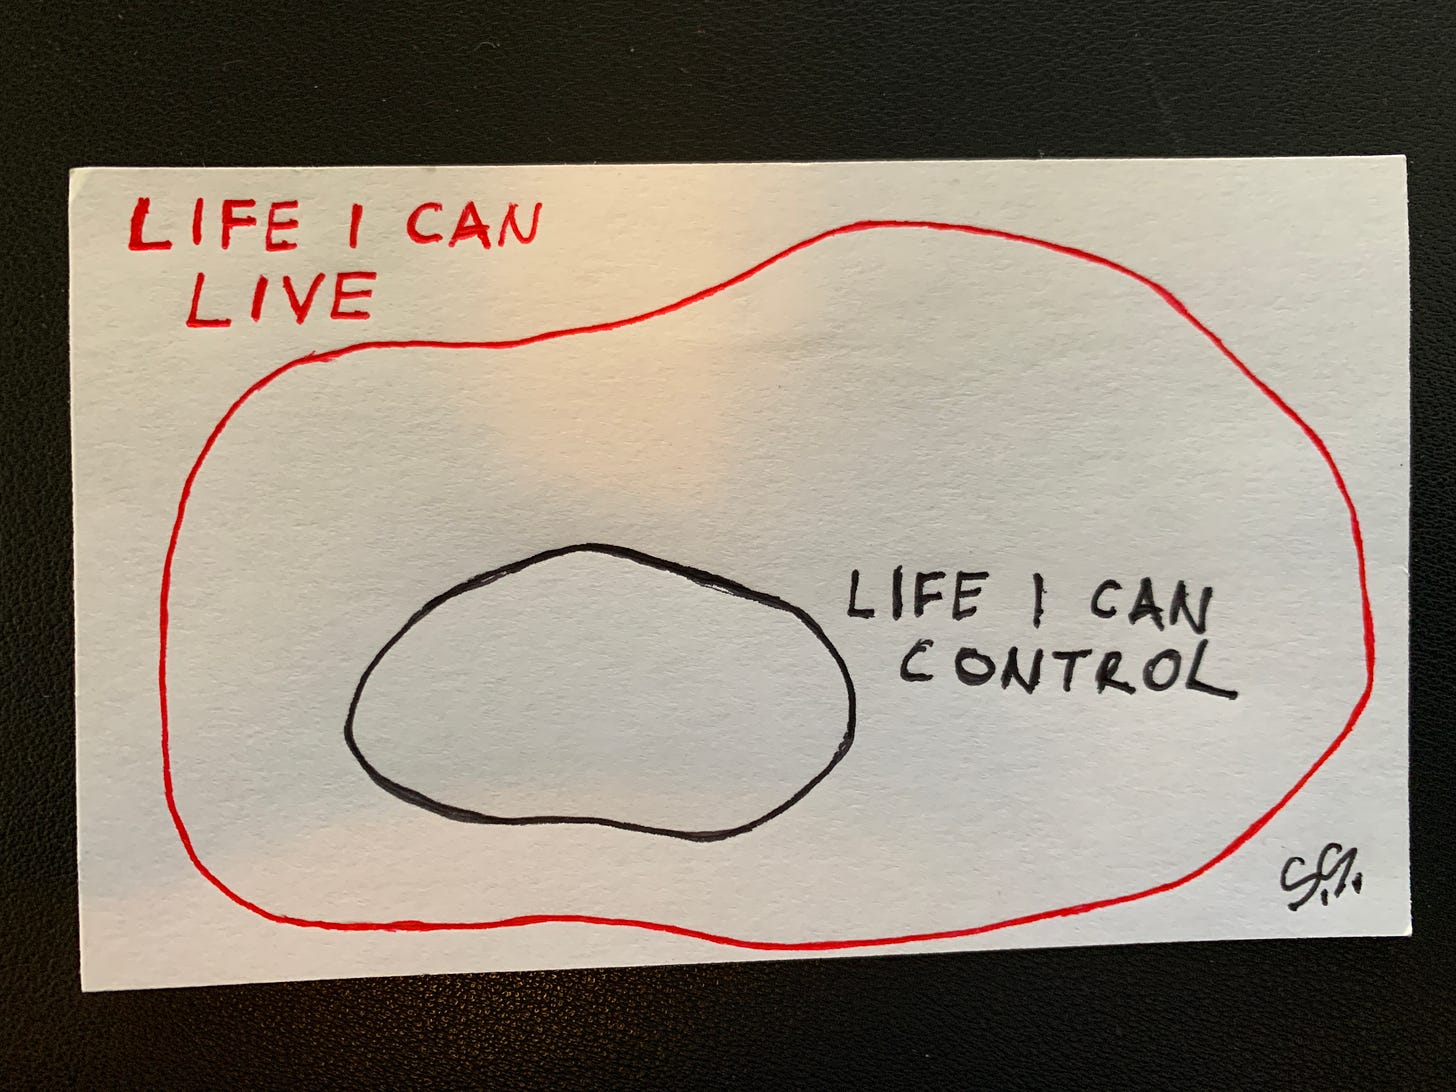 Life I Control vs. Life I Can Live